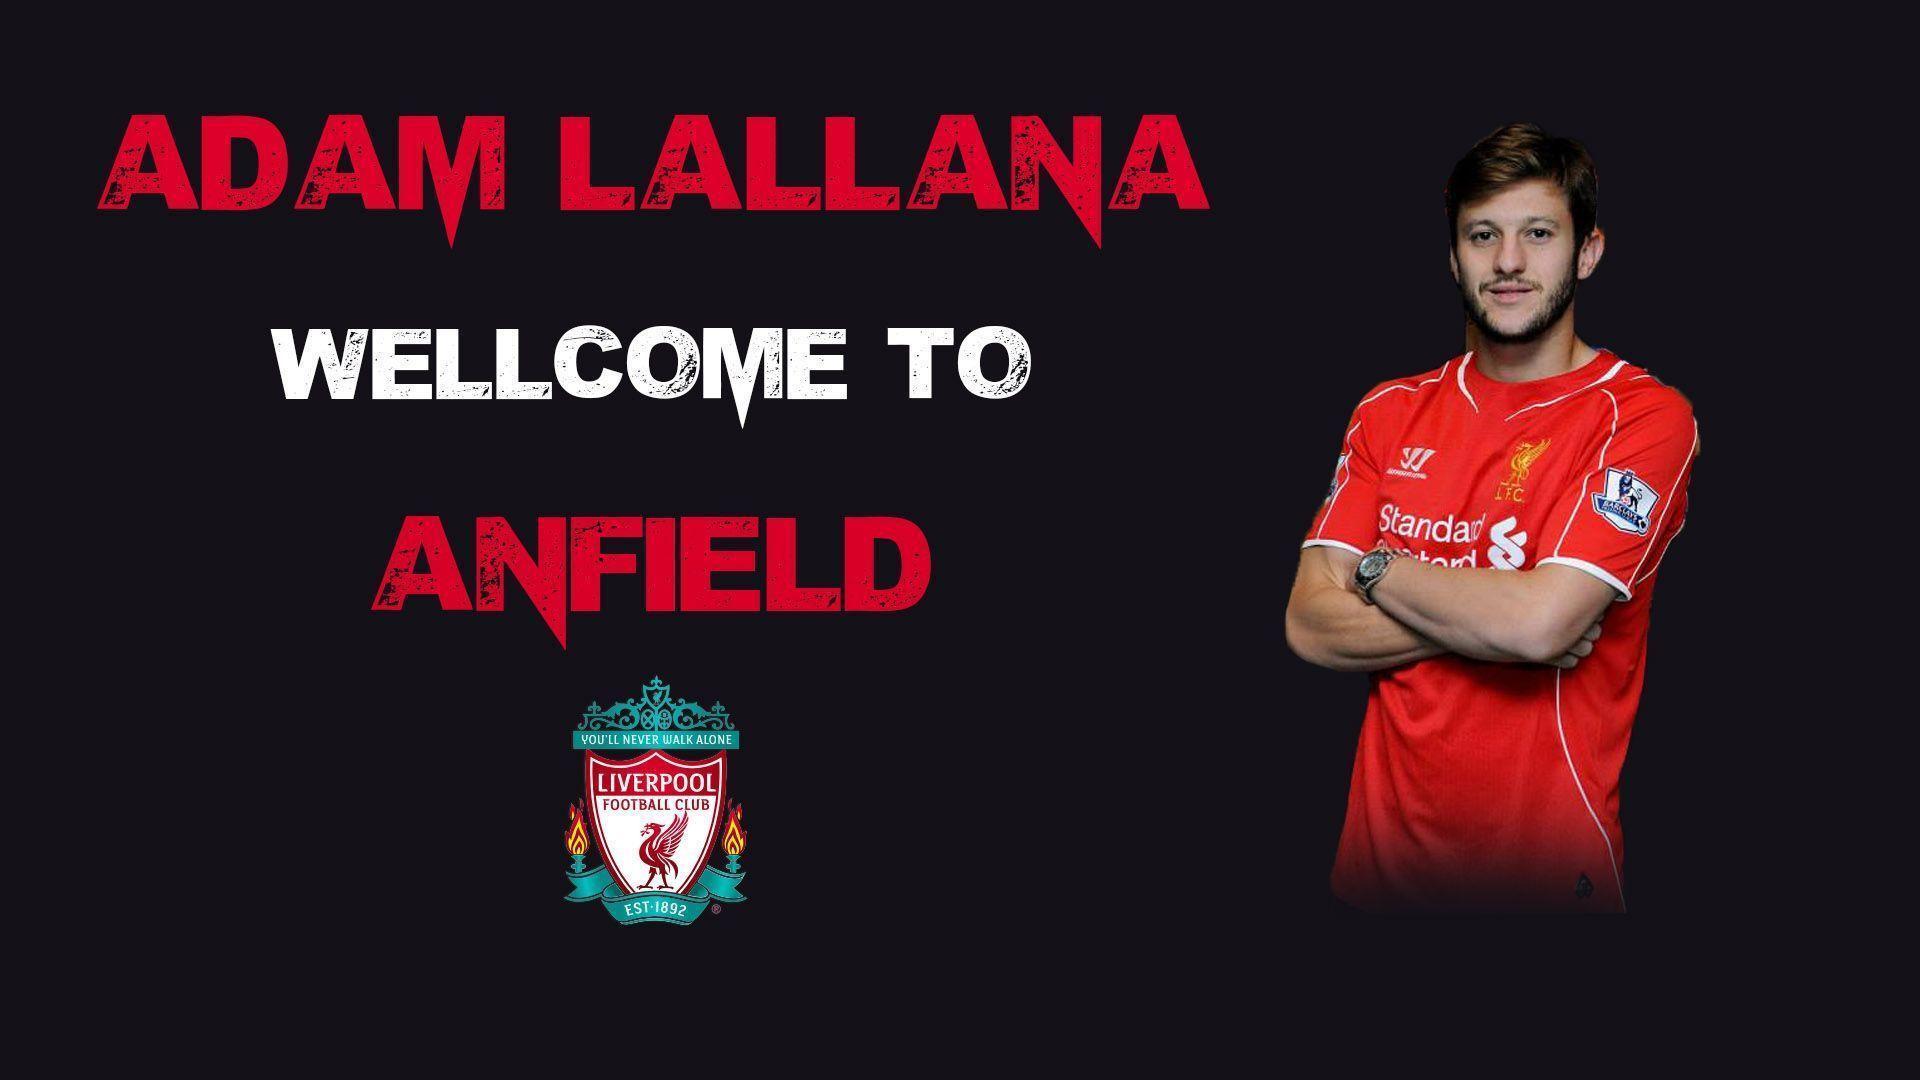 Adam Lallana 2014 Liverpool FC Wallpaper Wide or HD. Male